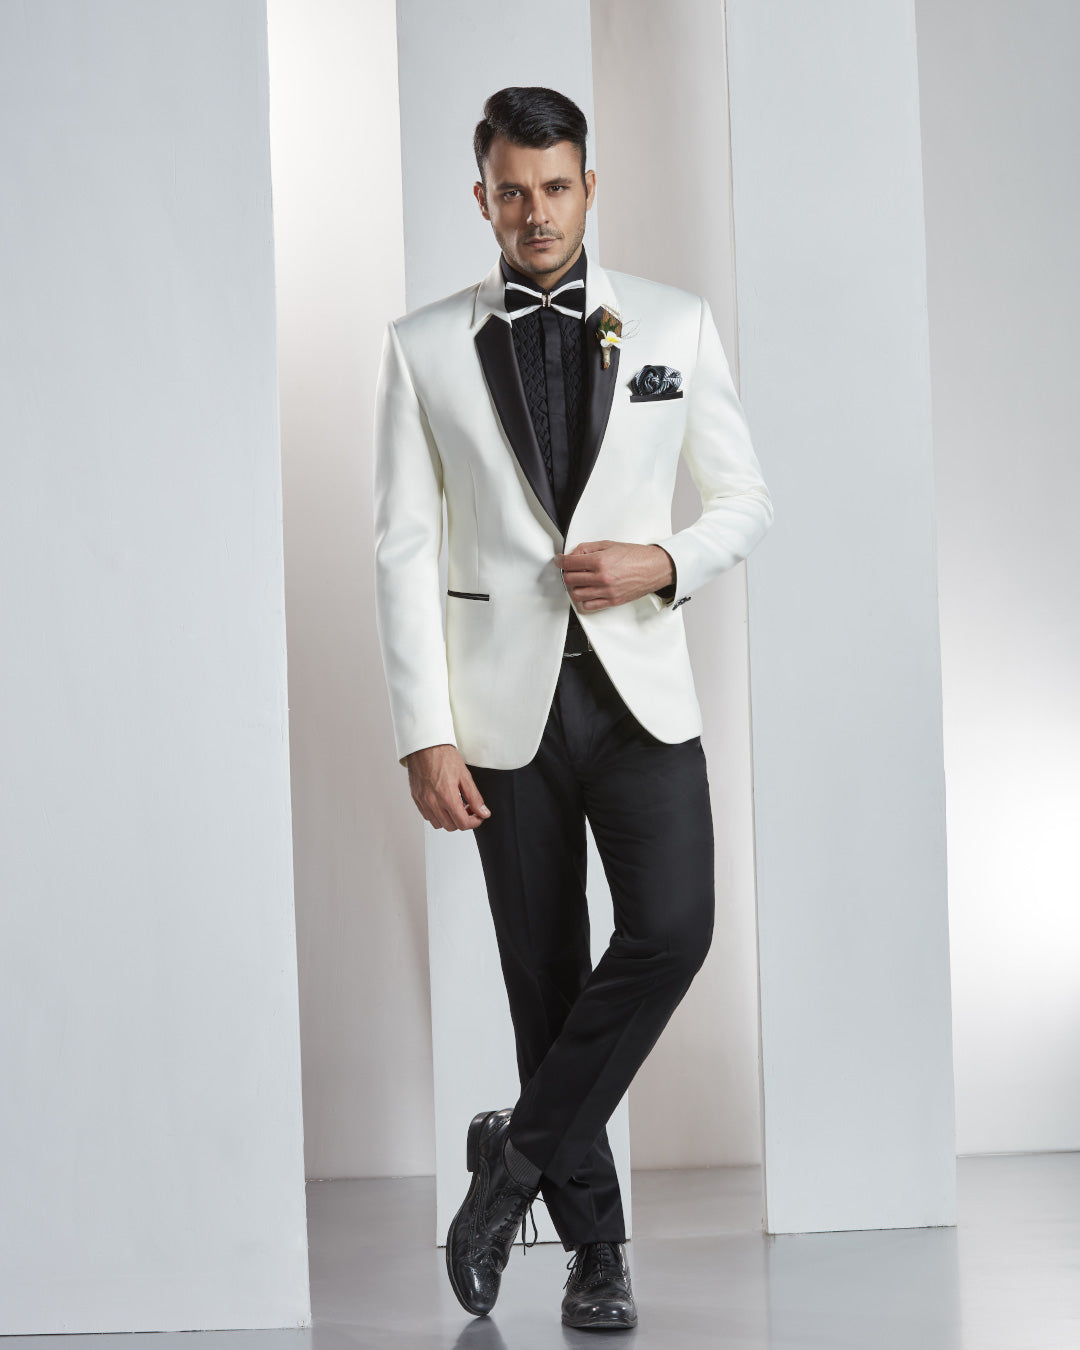 Classic Black & White Suit